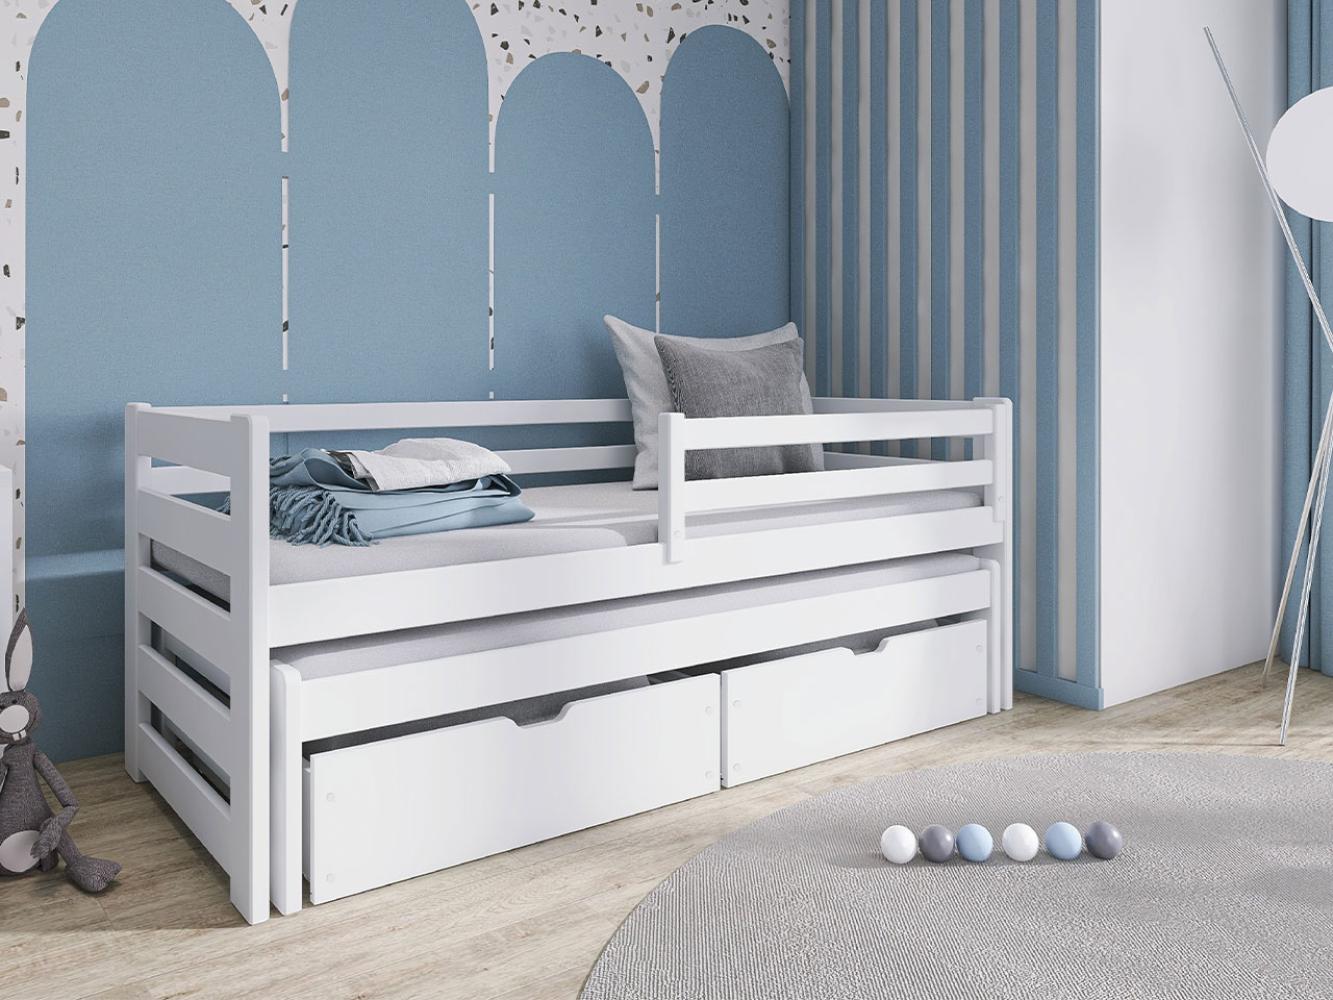 Kinderbett Sizilo mit 2 Schubladen, Gummirädern, Lattenrost (Farbe: Weiß, 90 x 200) Bild 1